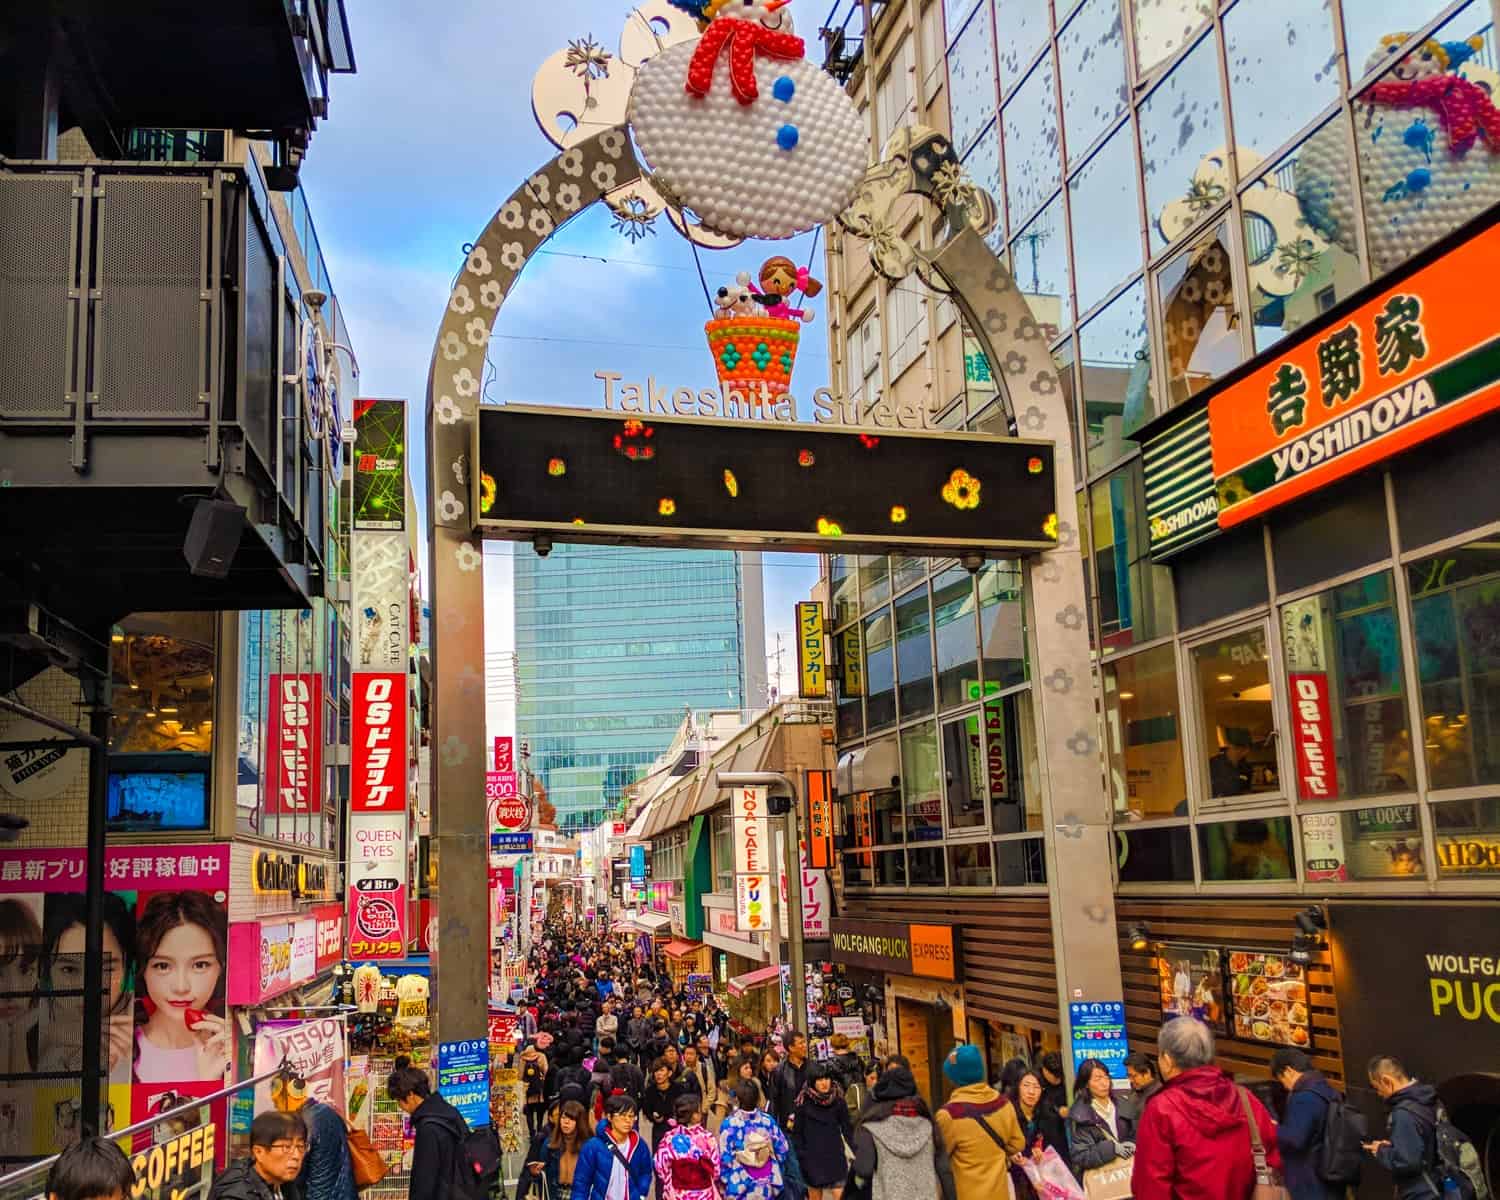 Takeshita Street in Harajuku